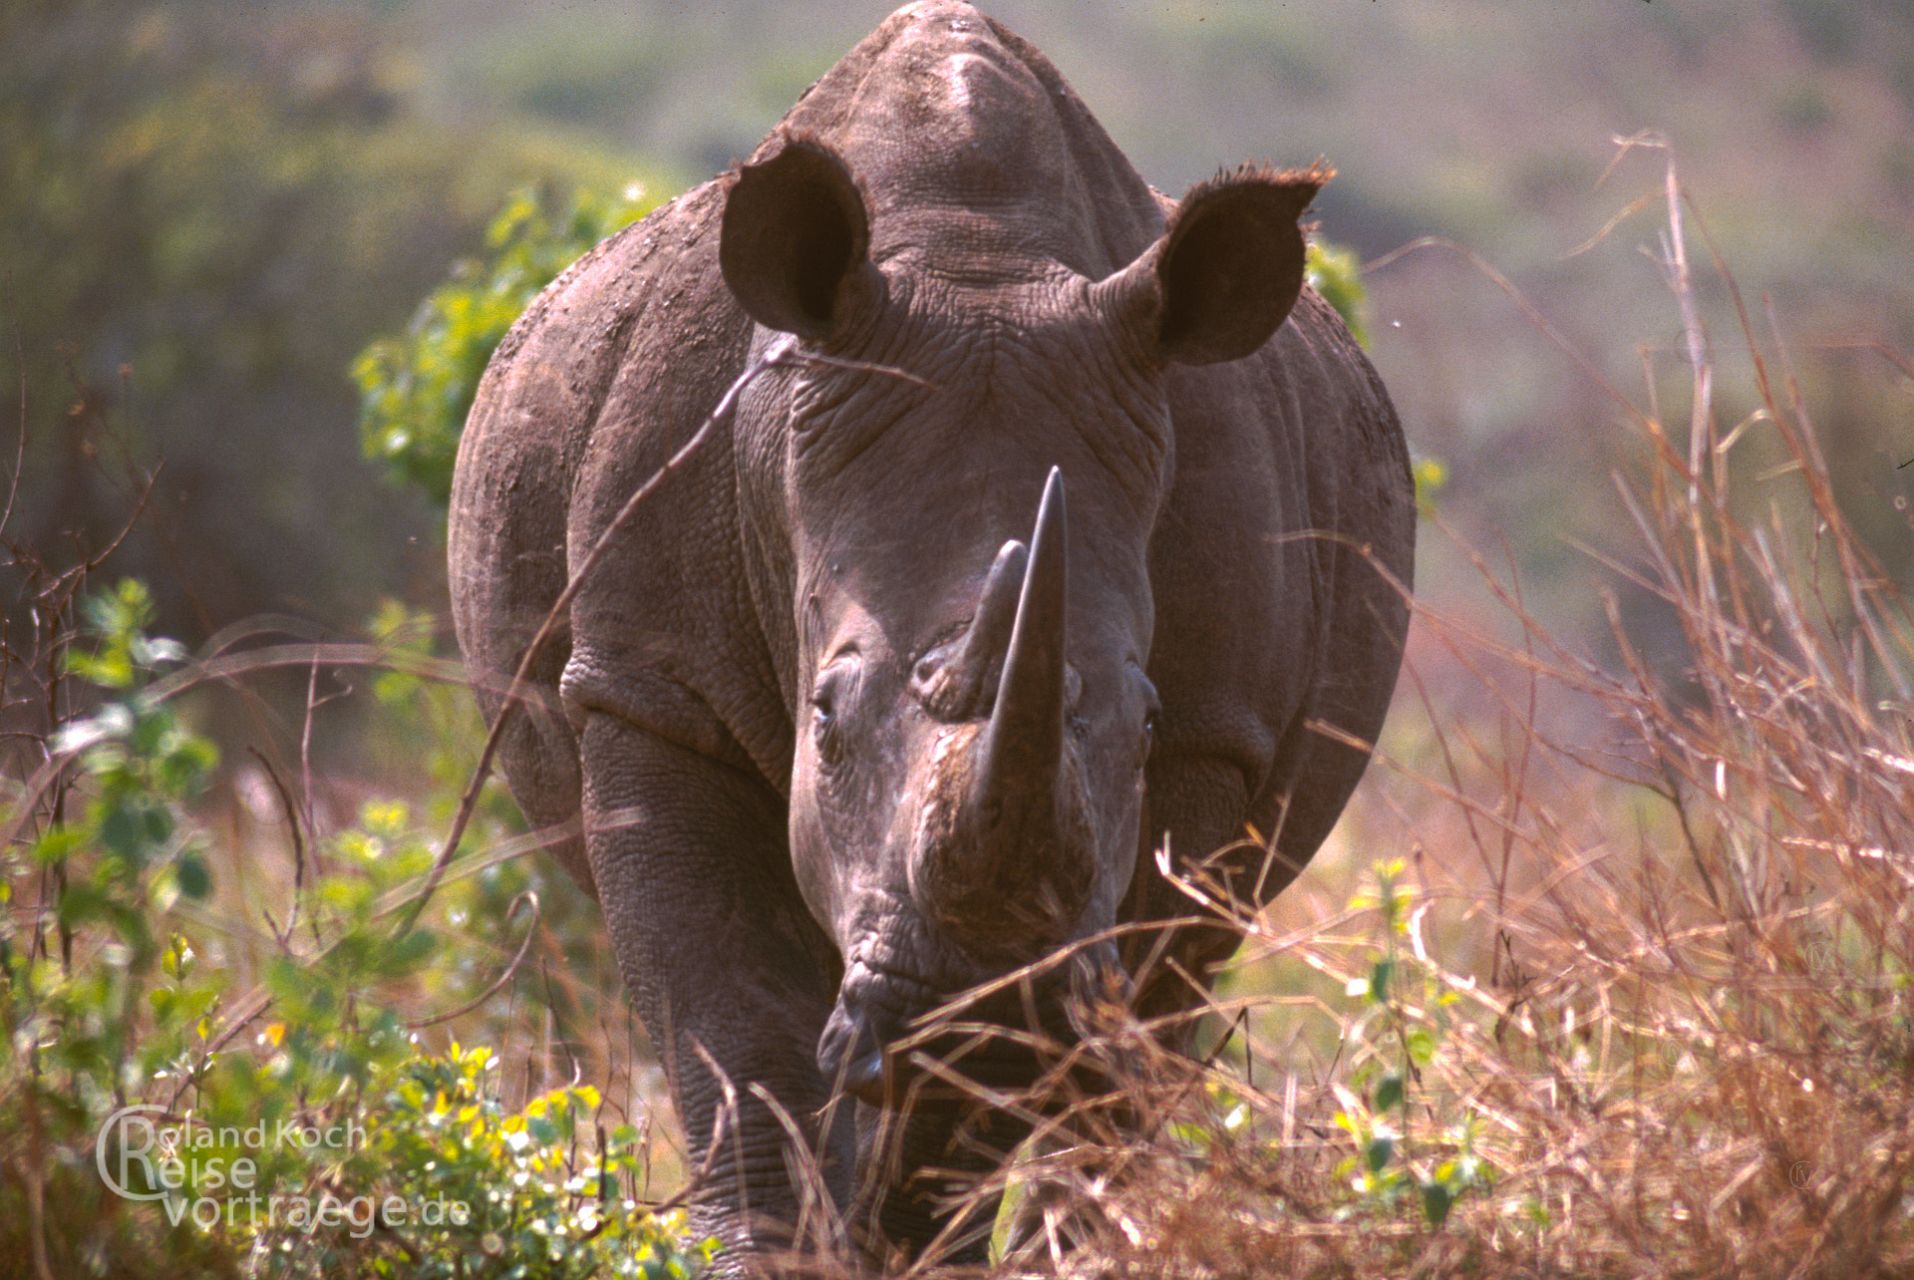 Southafrica- Rhino at Nationalpark Hluhluwe